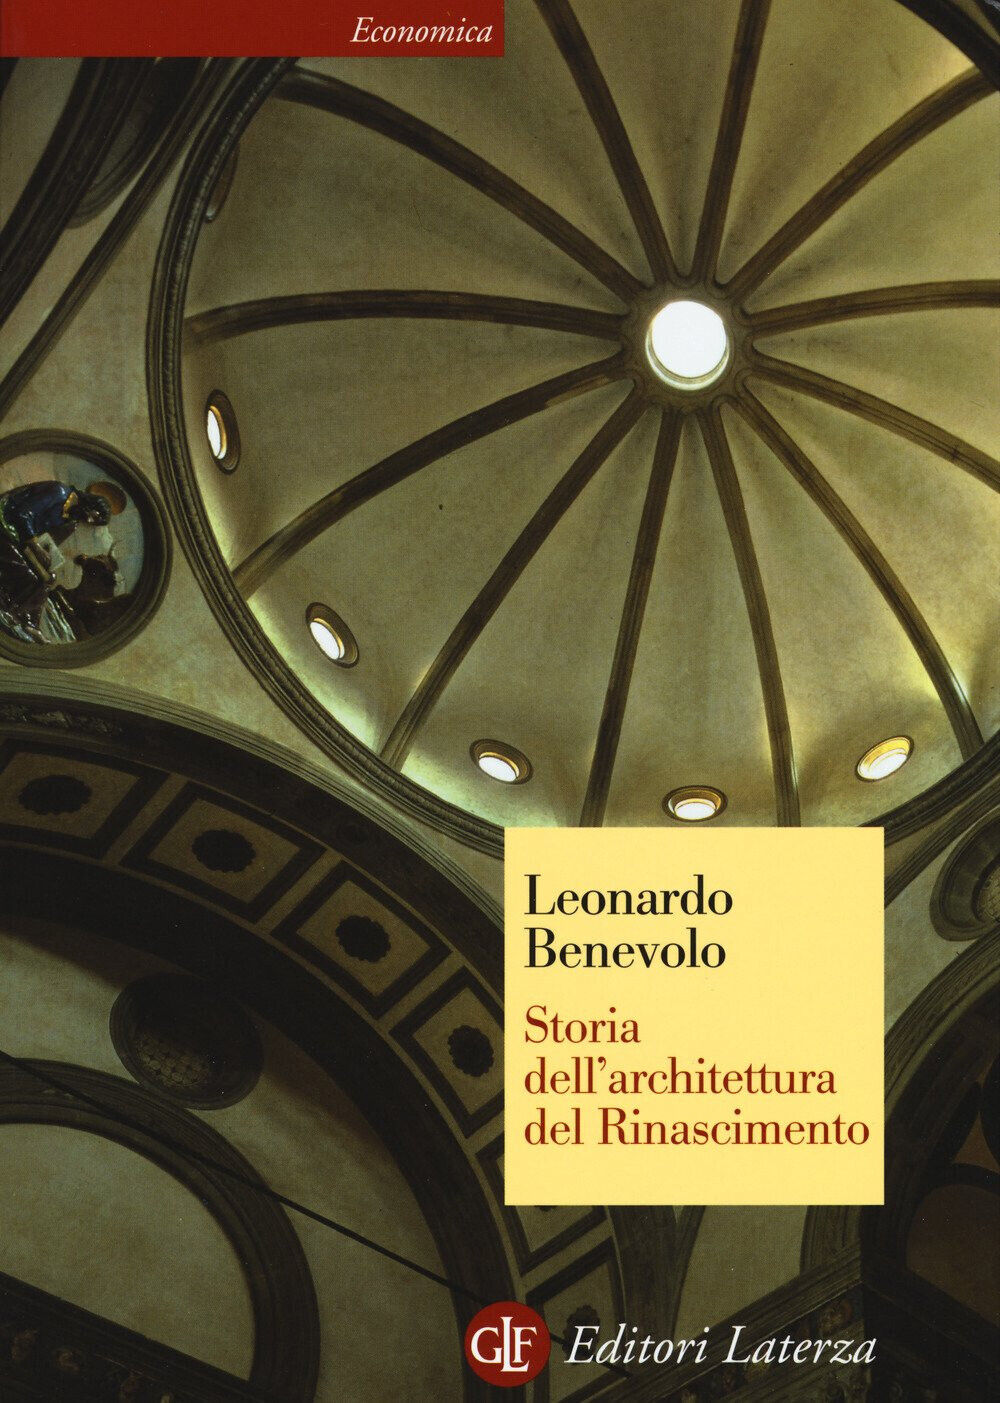 Storia dell'architettura del Rinascimento - Leonardo Benevolo - Laterza, 2017